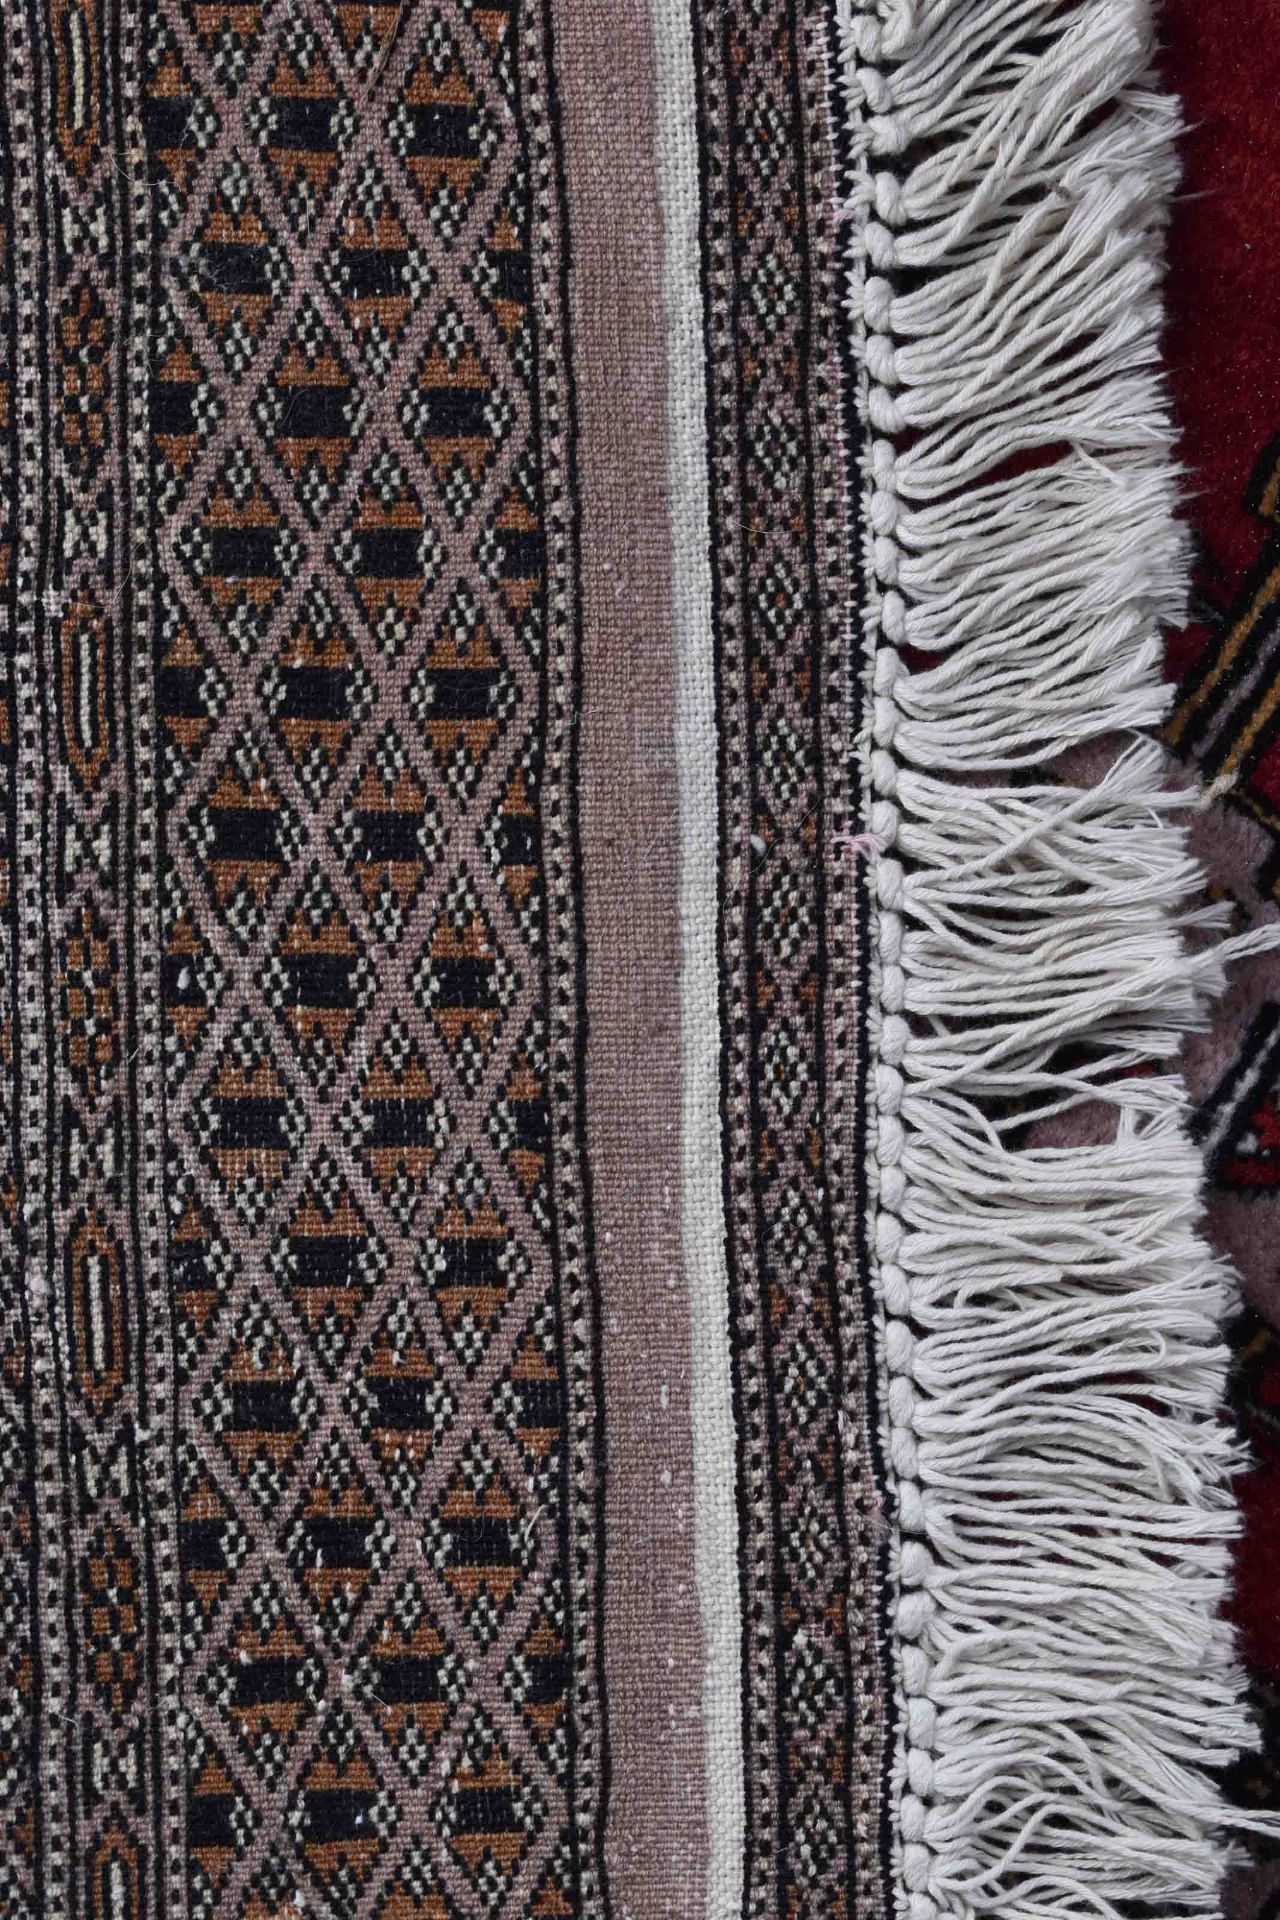 Alter Orientalischer Teppich197 cm x 128 cmOld oriental carpet197 cm x 128 cm - Bild 4 aus 4